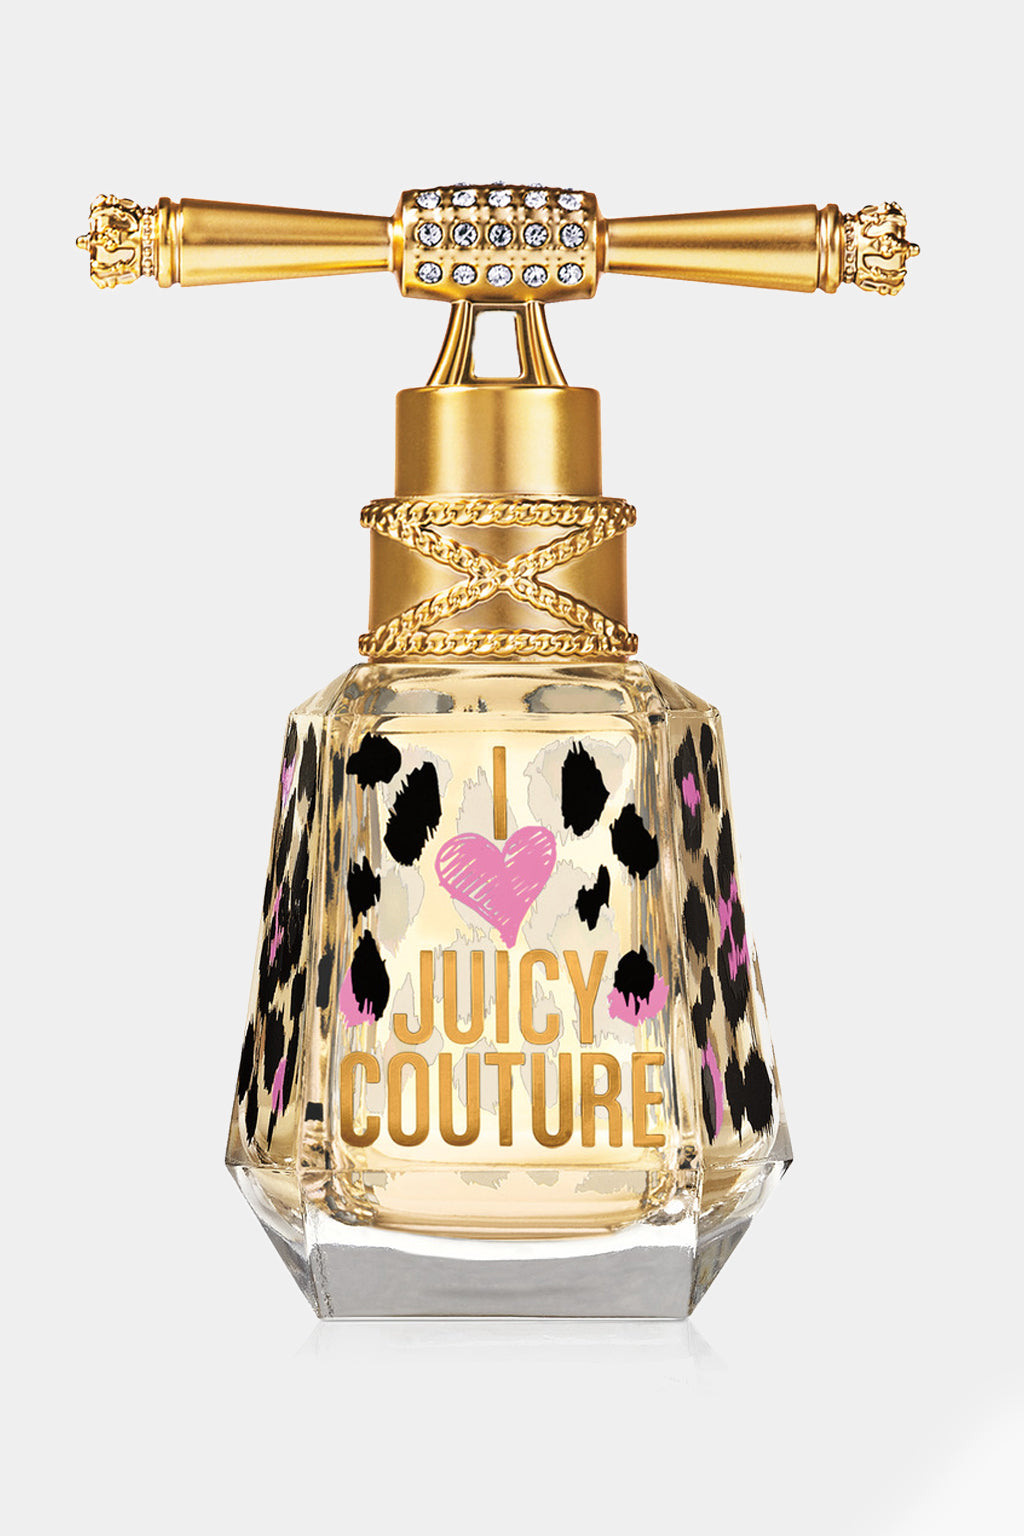 Juicy Couture - I Love Juicy Couture Eau De Parfum 100ml